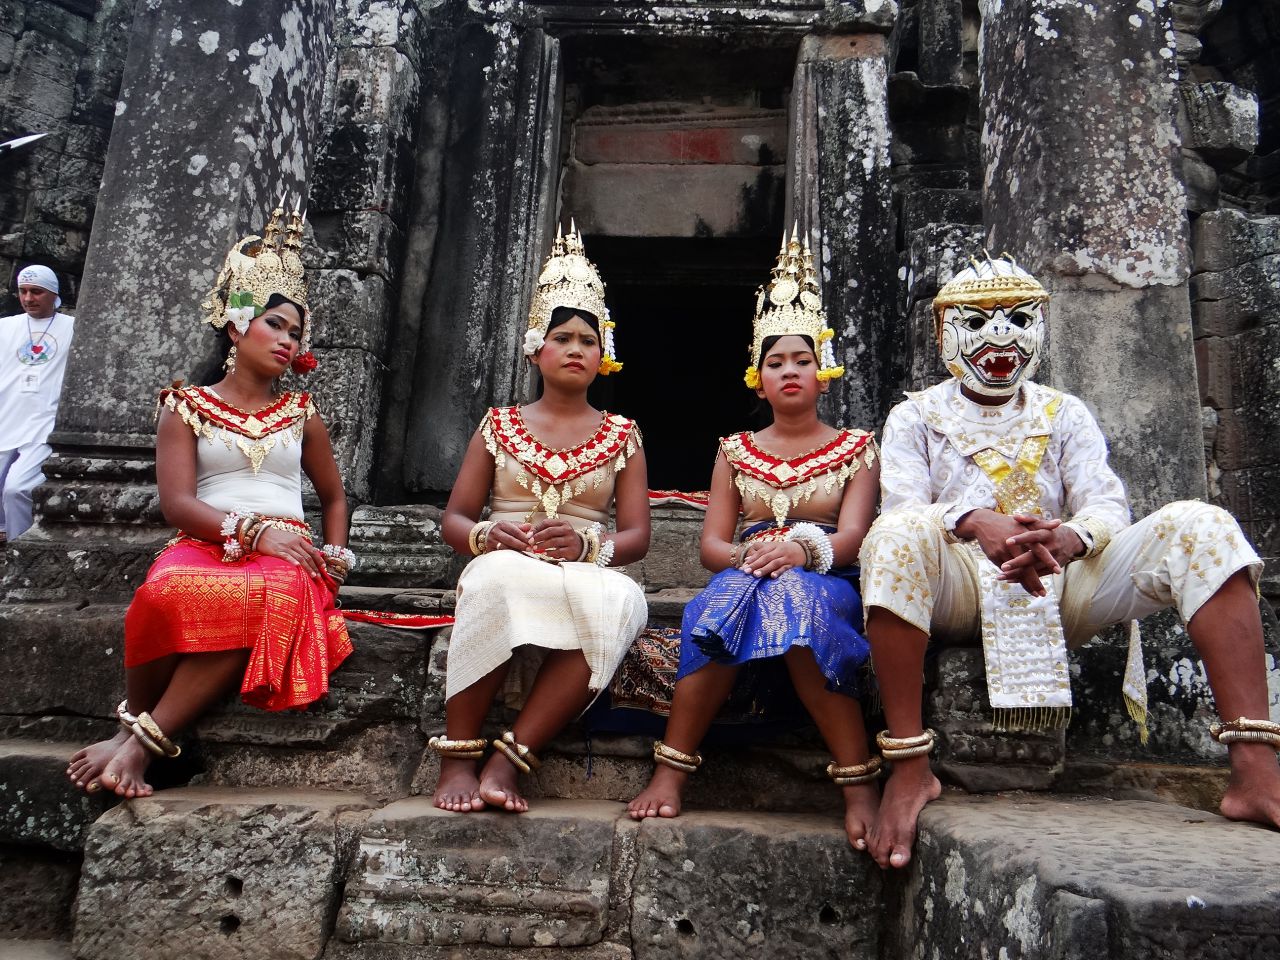 Артисты создают древнюю кхмерскую атмосферу. - Камбоджа, Лаос. Февраль 2014. Часть 2. Ангкор.